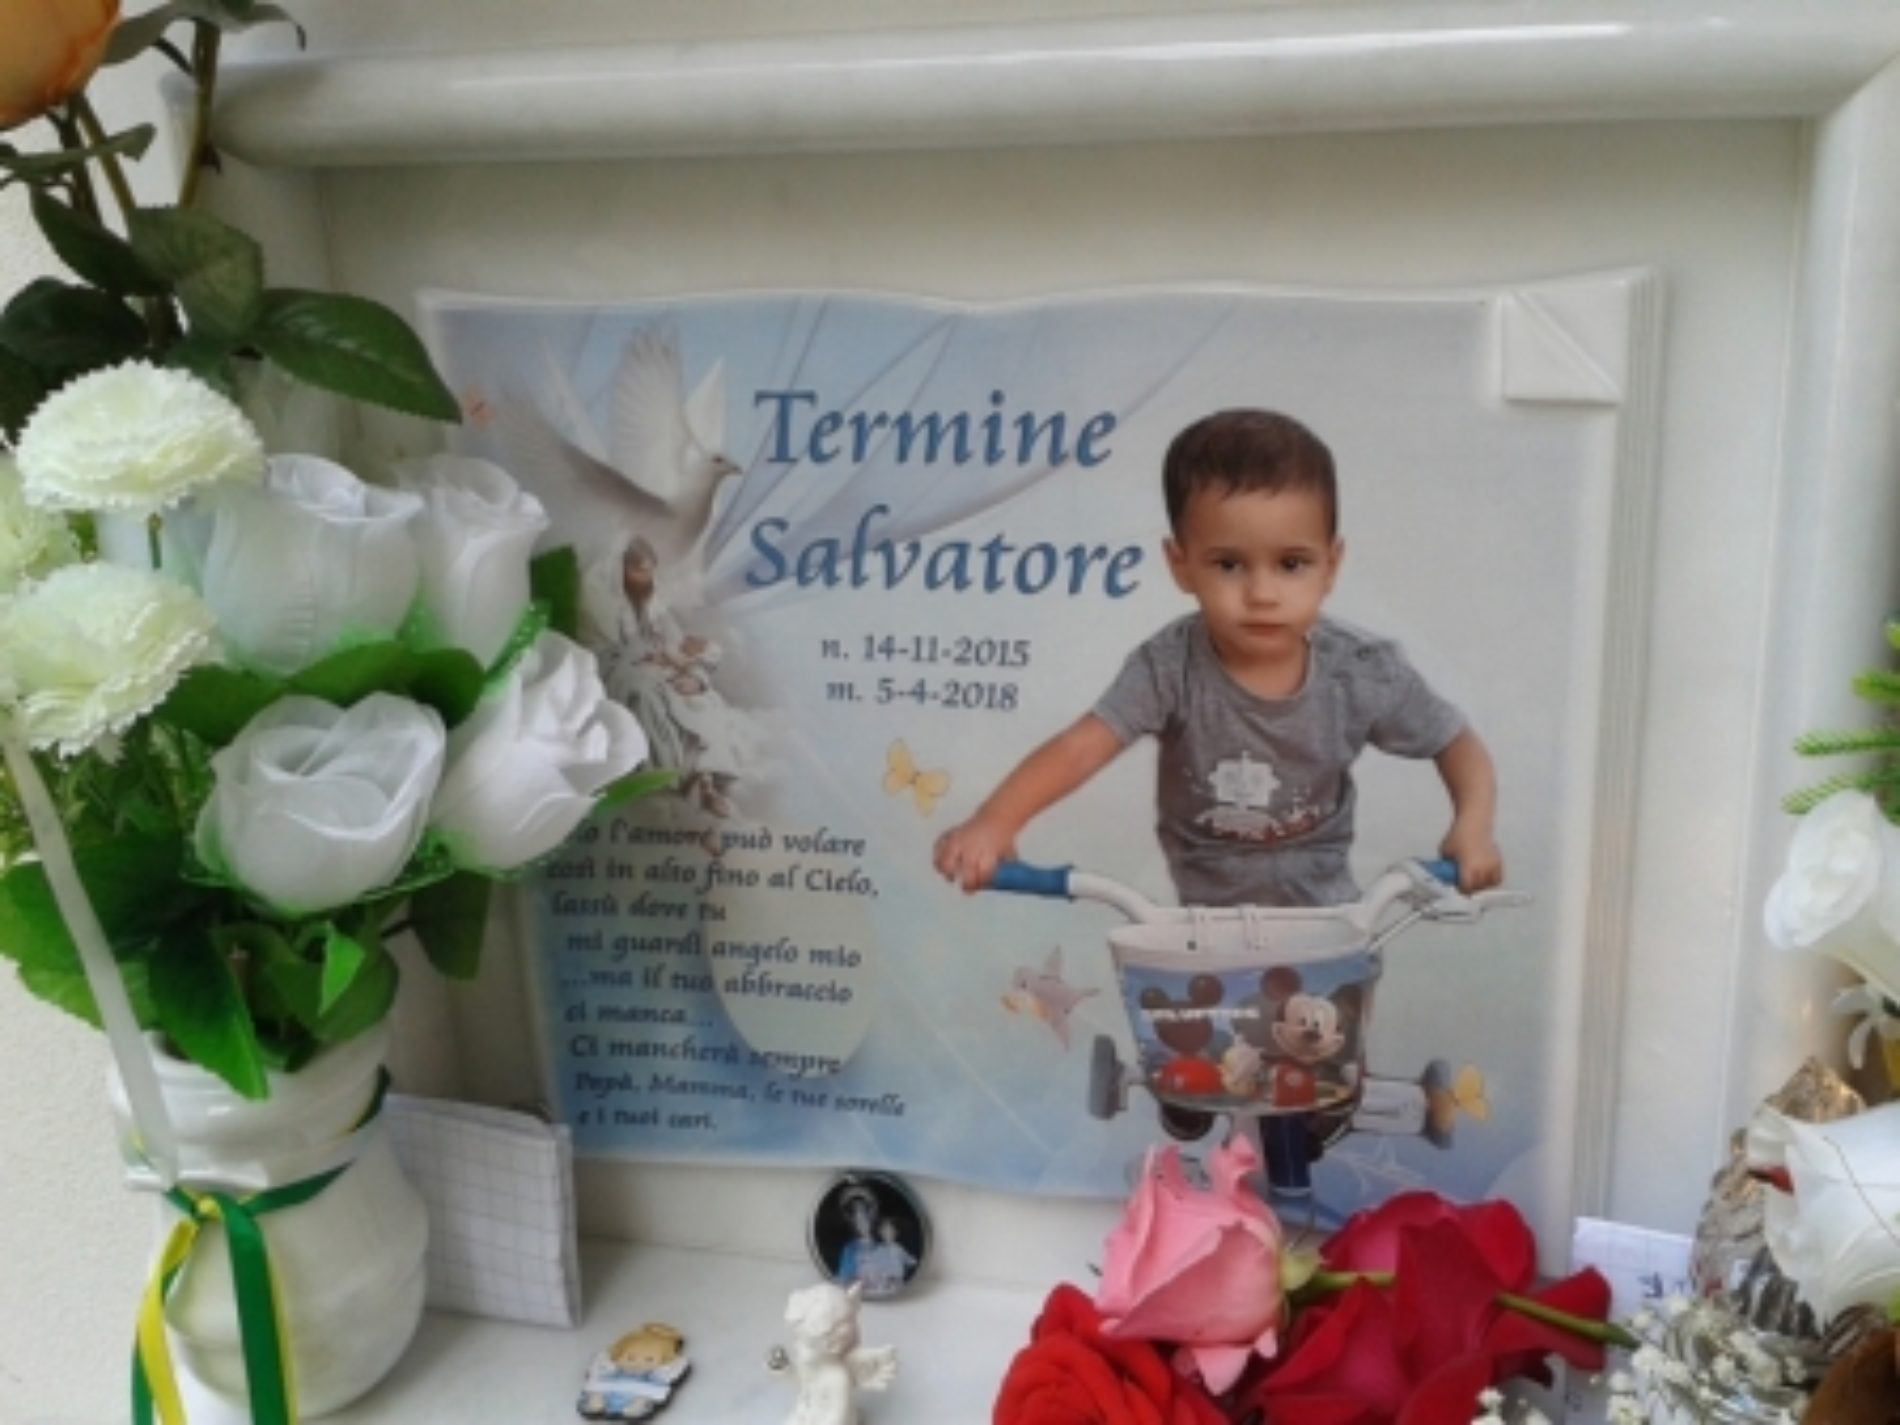 PIETRAPERZIA. Preghiere, palloncini bianchi  e una canzone davanti alla tomba del piccolo Salvatore Termine.